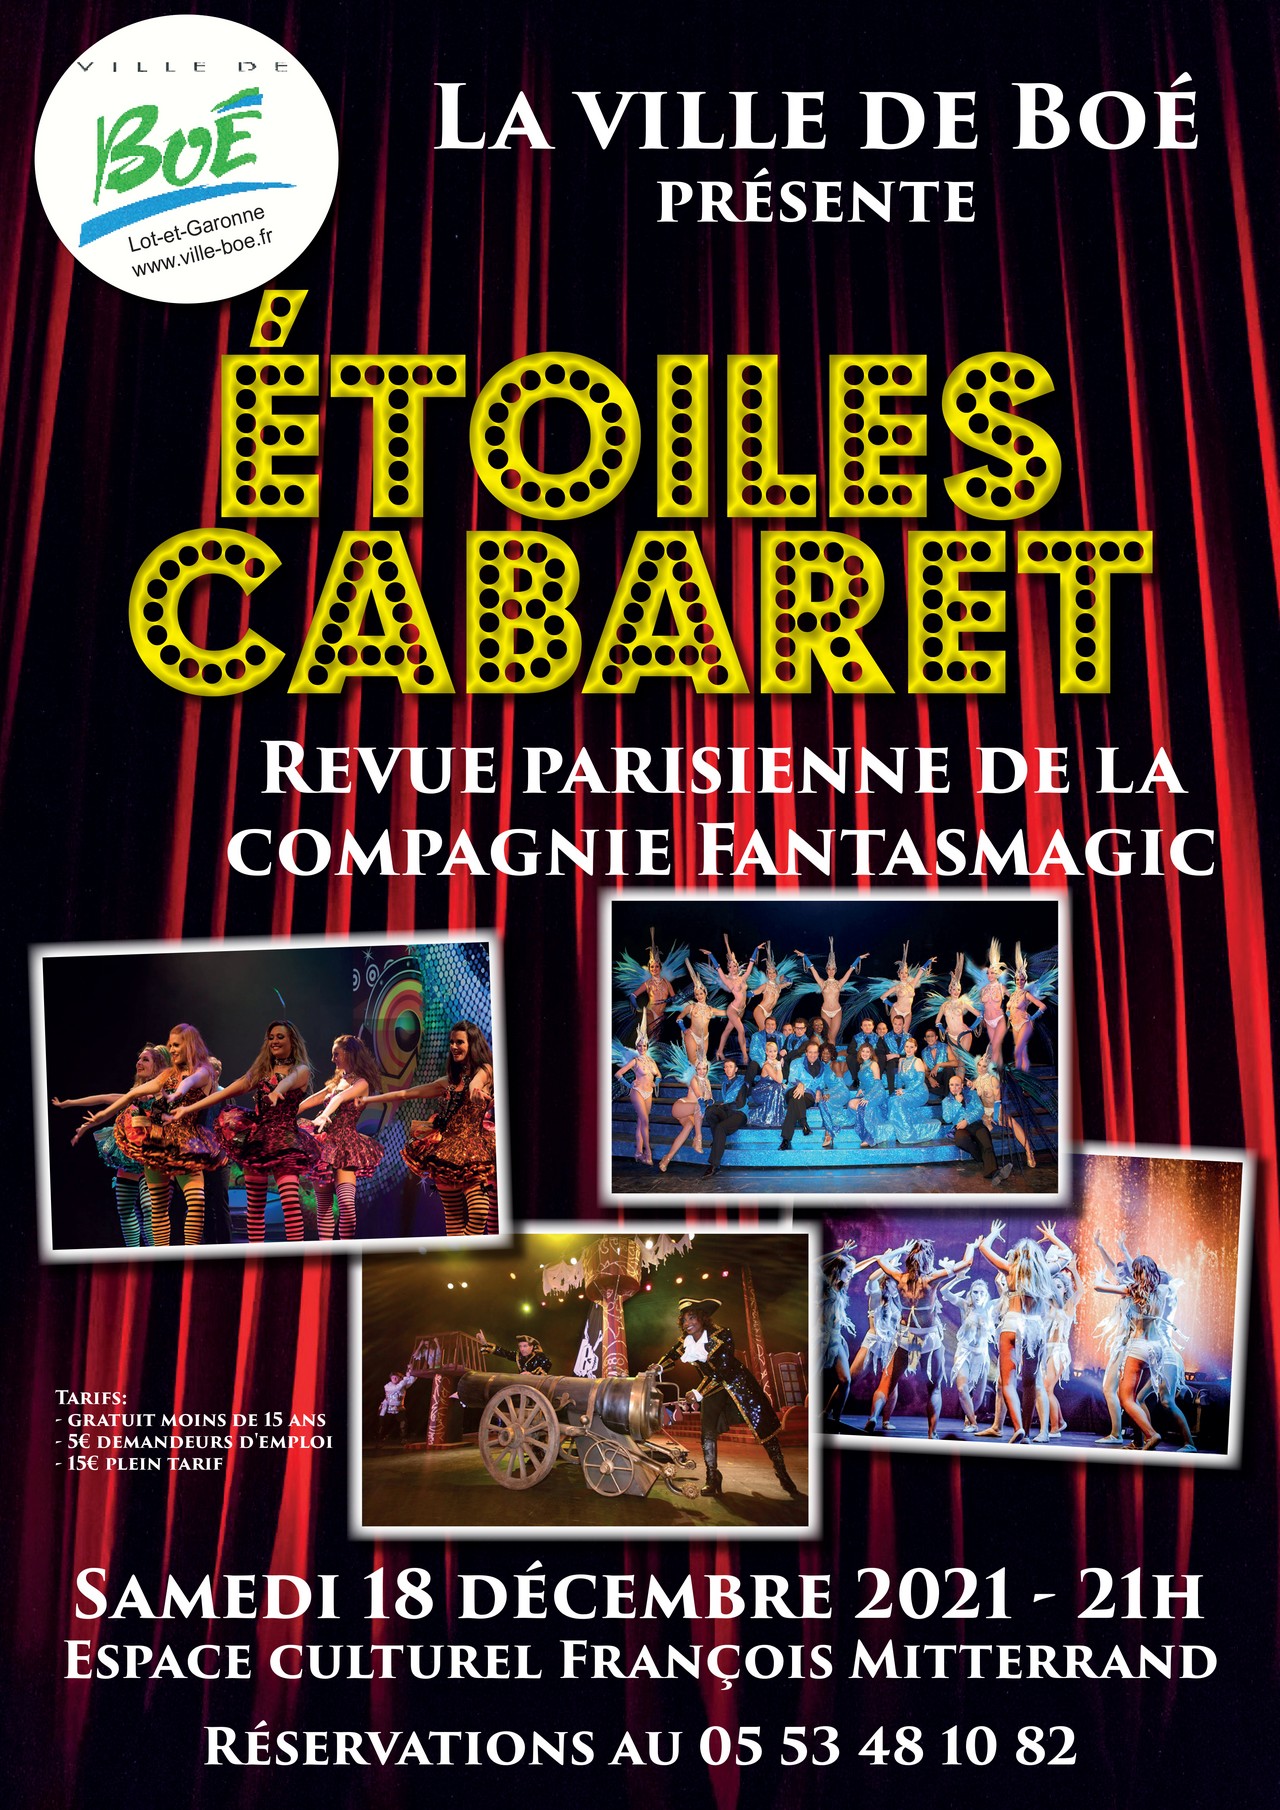 Étoile cabaret, un nouvel événement à Boé !